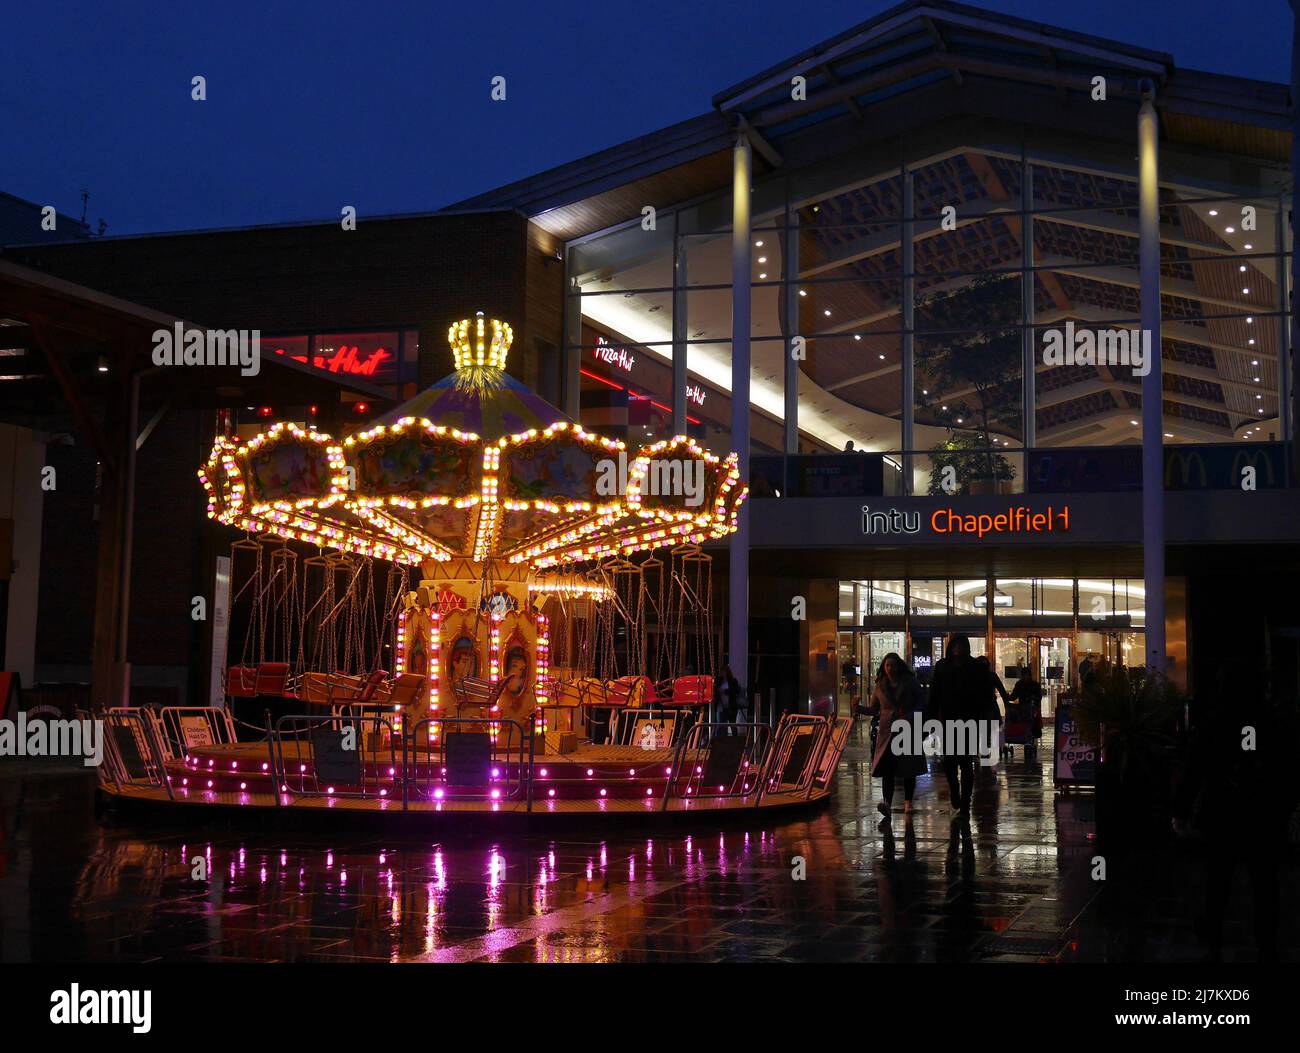 Giostra per bambini illuminata di notte, fuori dal centro commerciale Chapelfield nella città di Norwich, Norfolk, Inghilterra, Regno Unito Foto Stock